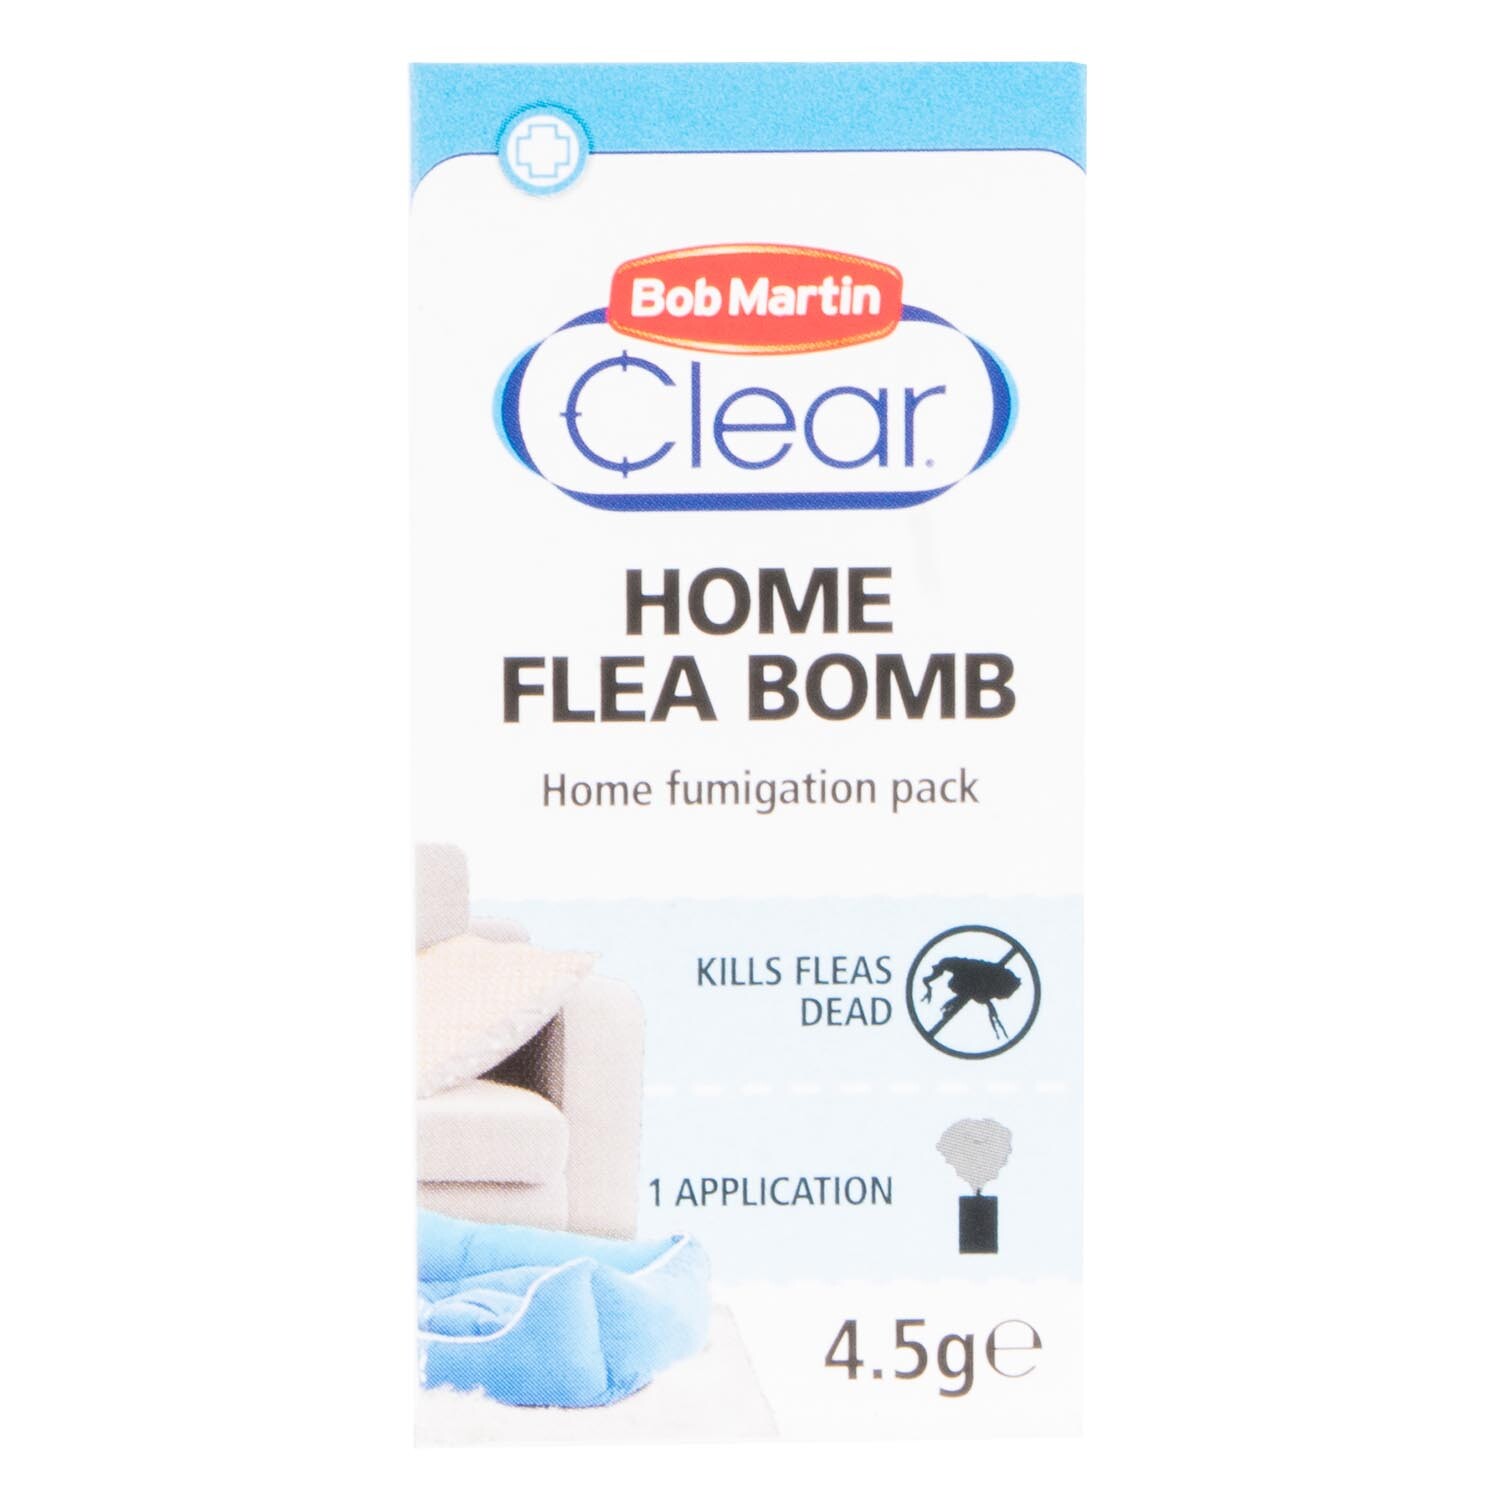 Bob Martin Clear Home Flea Bomb 4.5g Image